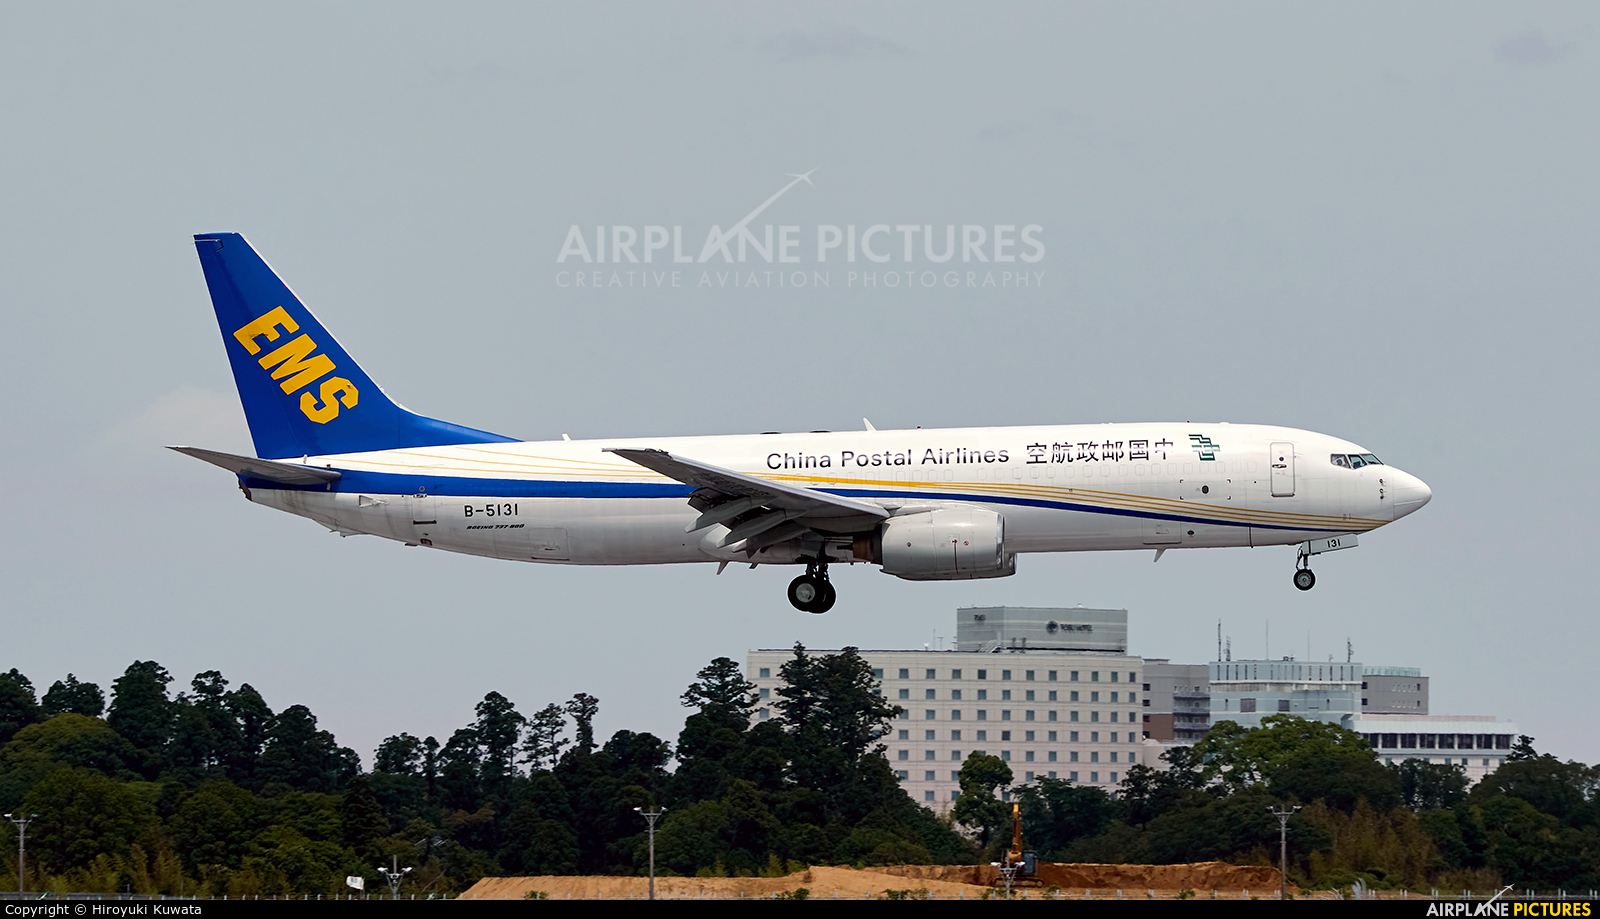 China Postal Airlines B-5131 aircraft at Tokyo - Narita Intl